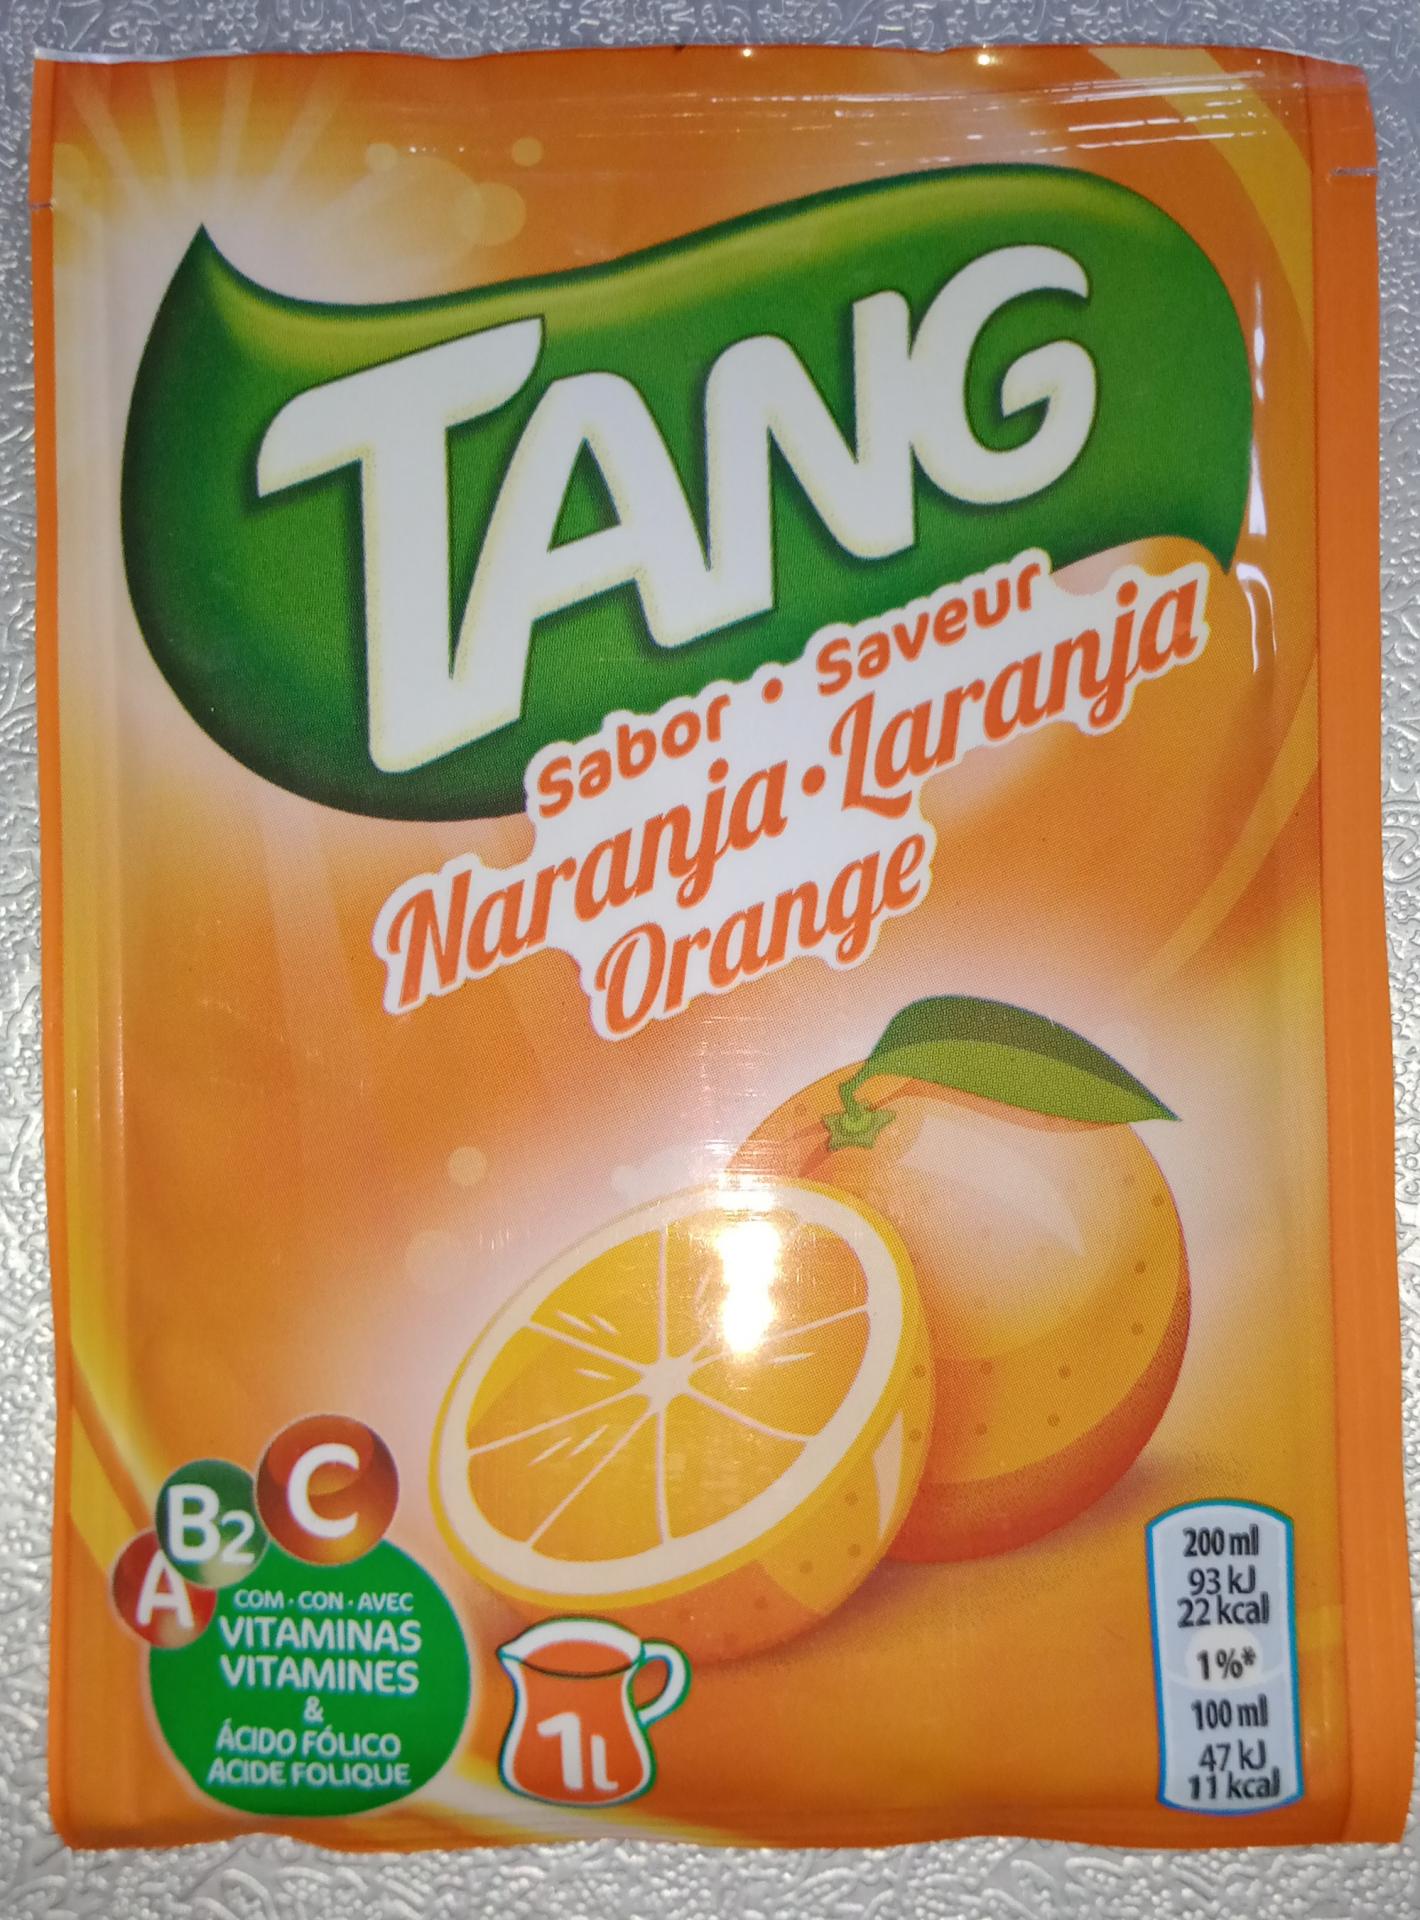 Tang orange